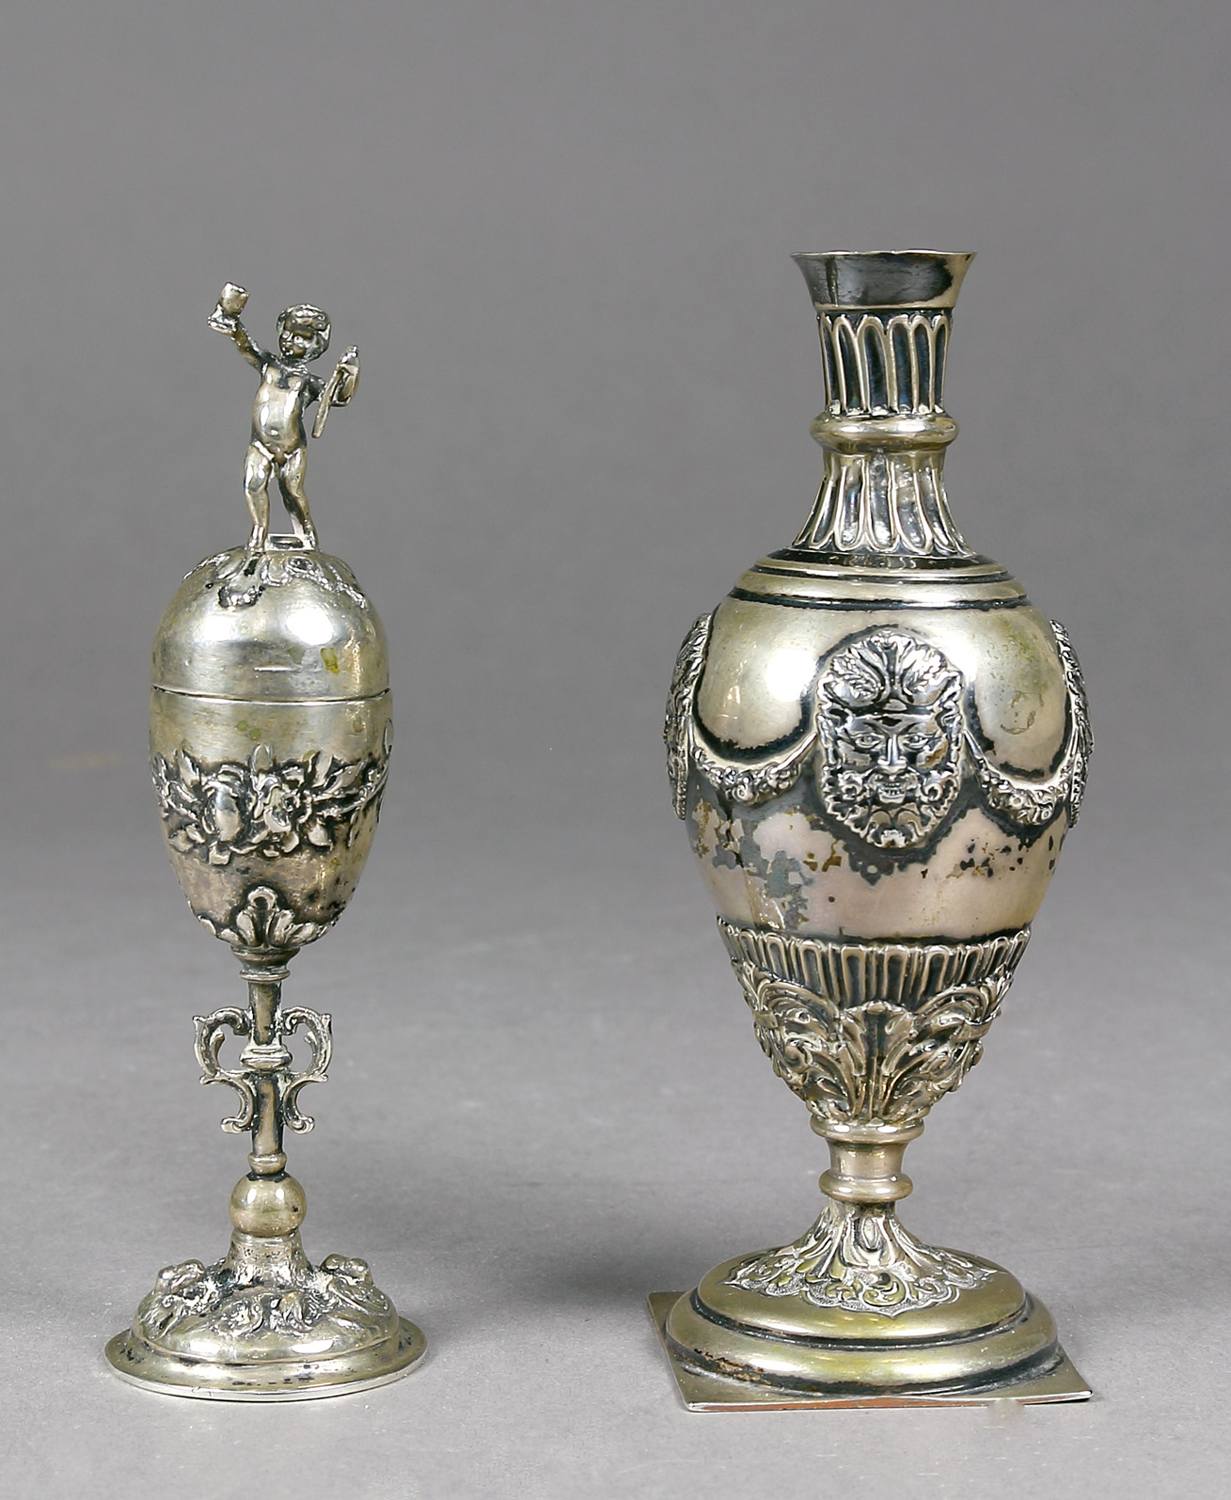 Auktionshaus Quentin Berlin Miniatur-Pokal und Miniatur-Vase  Silber  19. Jh. oder Ã¤lter